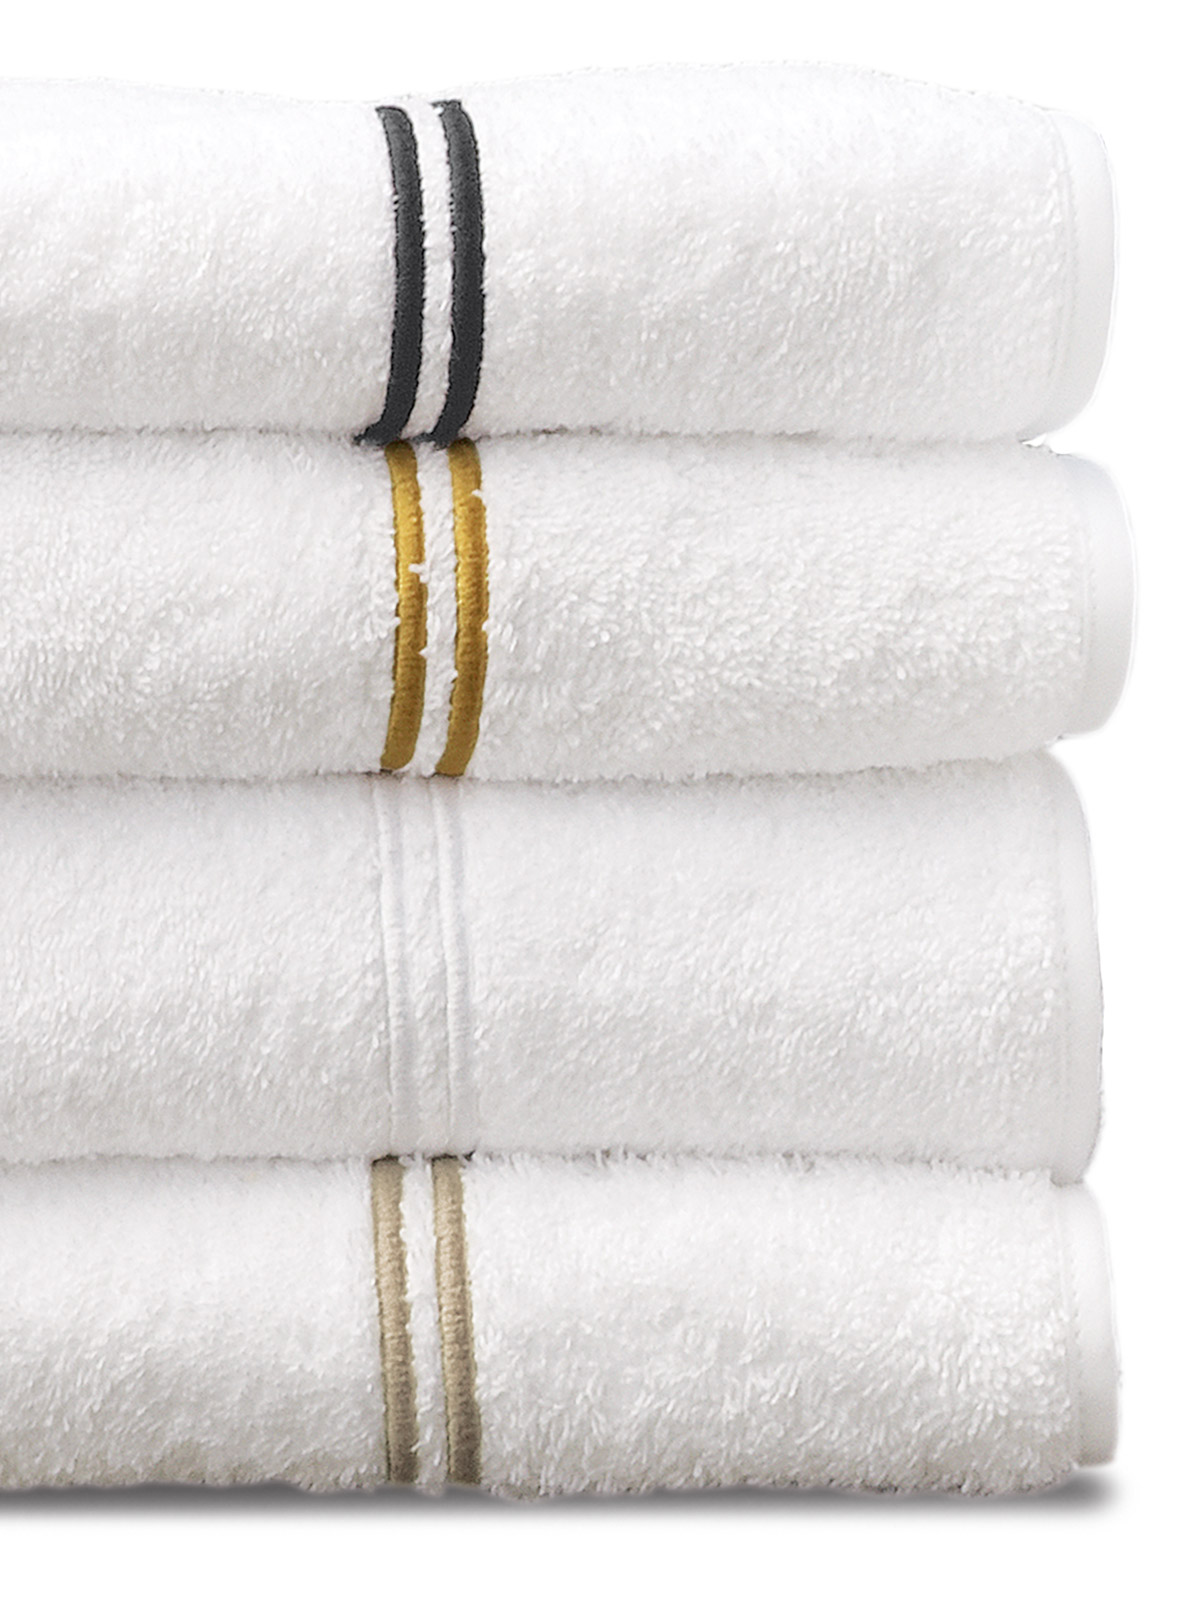 Regatta Towels: Gray, Blue, Pink